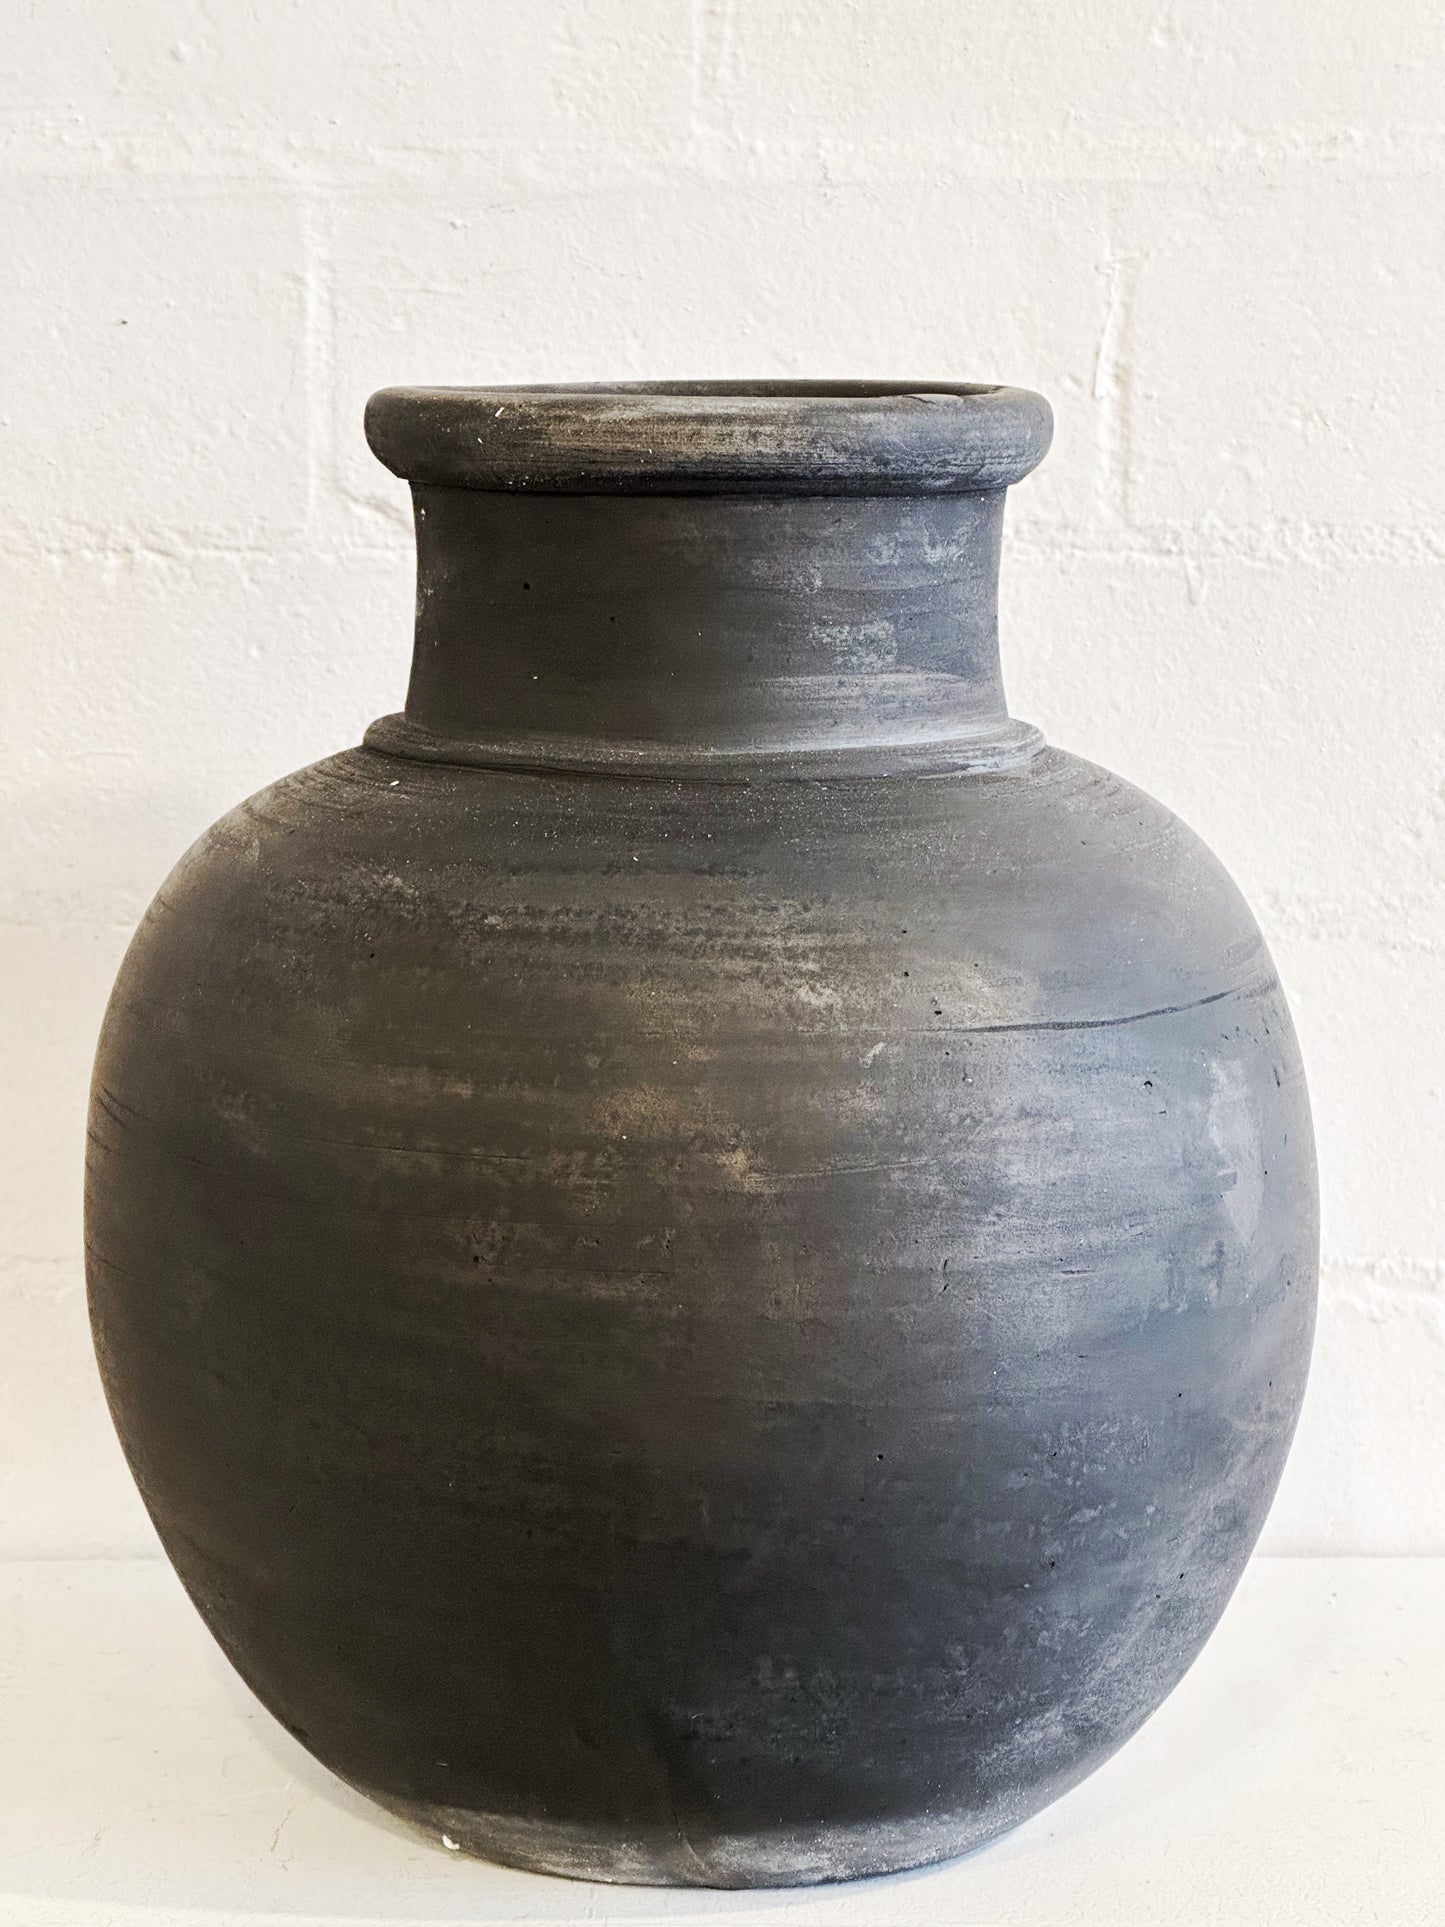 Black Terra Cotta Vase Container